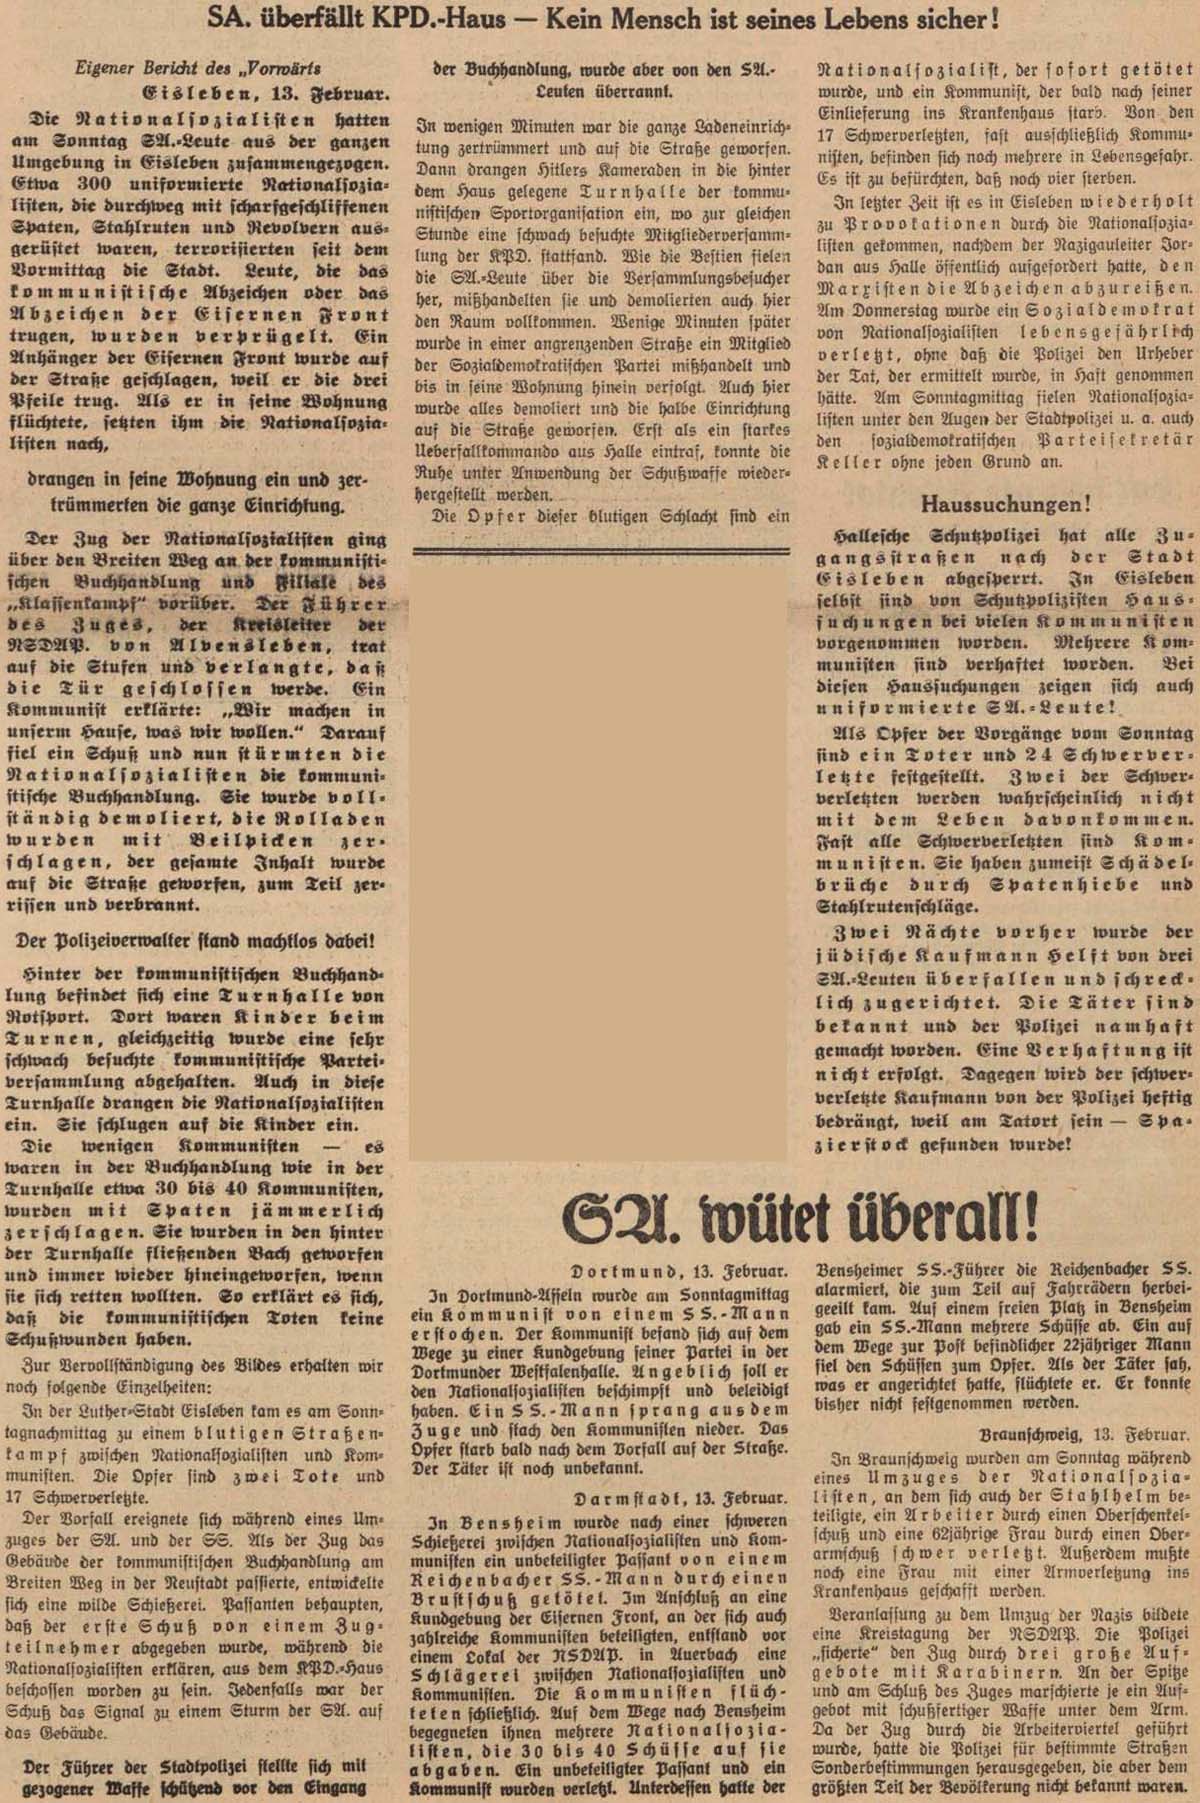 Artikel im ´Vorwärts´ vom 13.3.1933